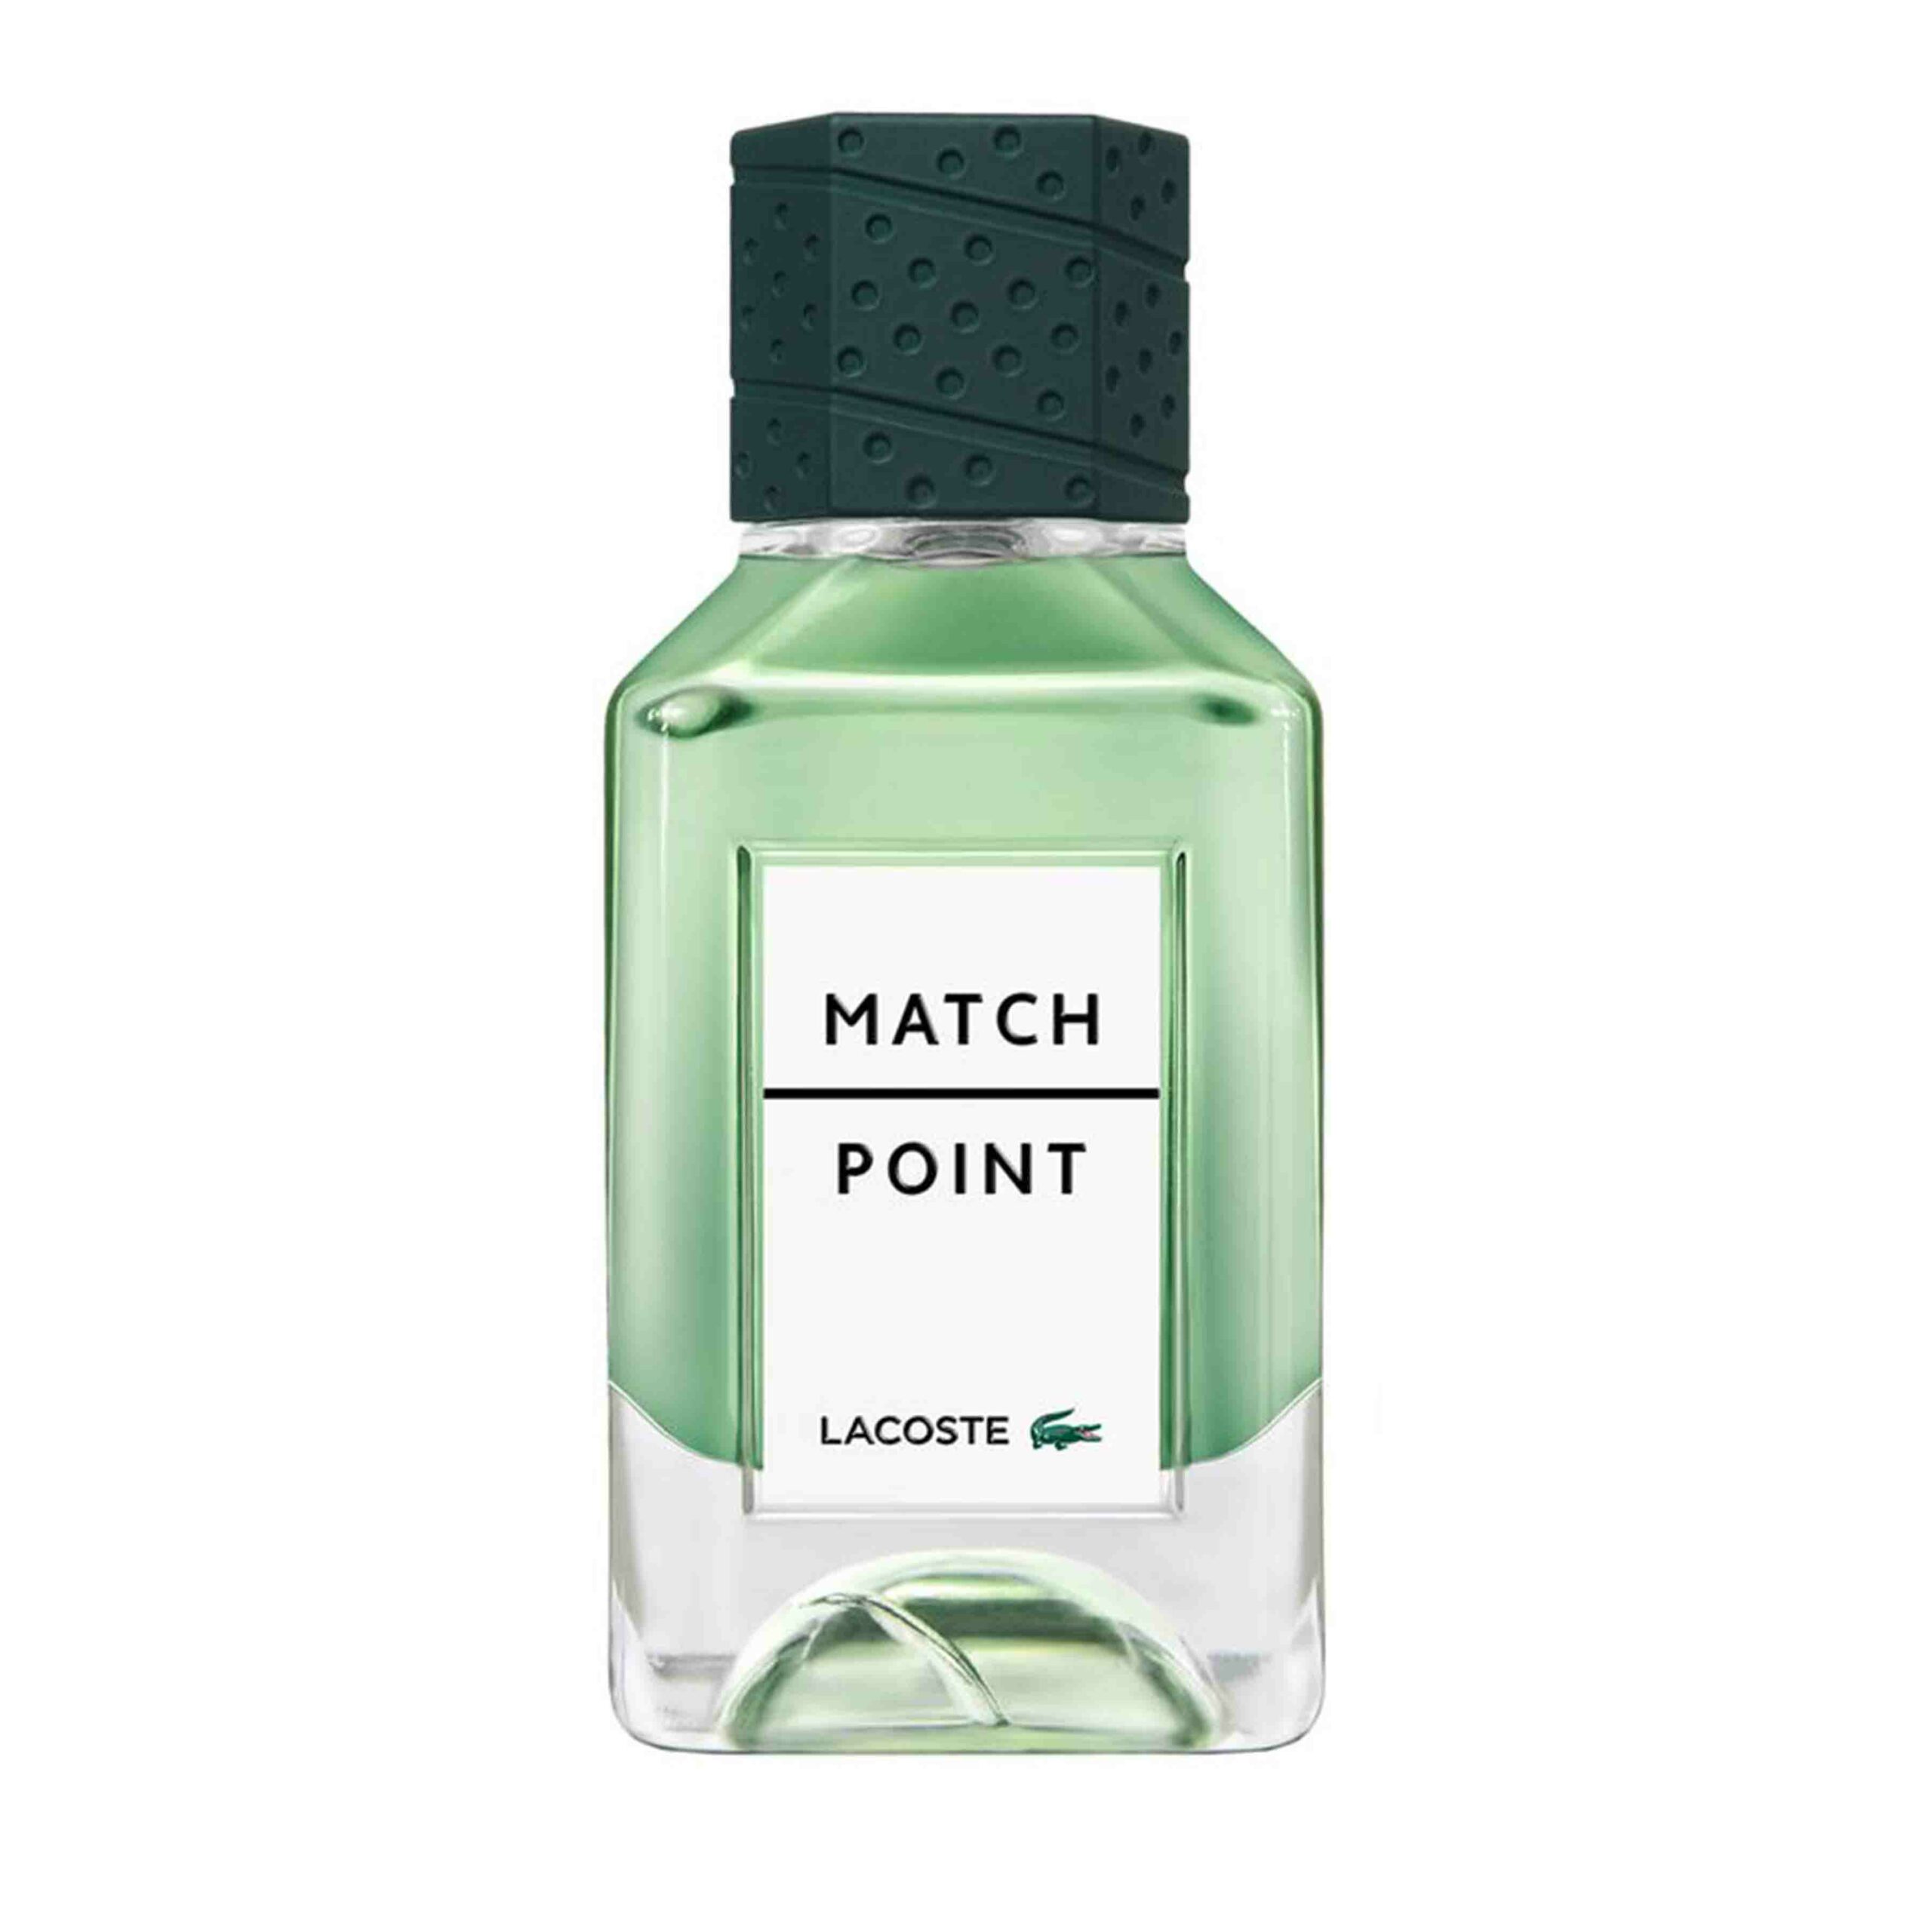 Die besten Parfums für Männer 2021: Lacoste - Match Point